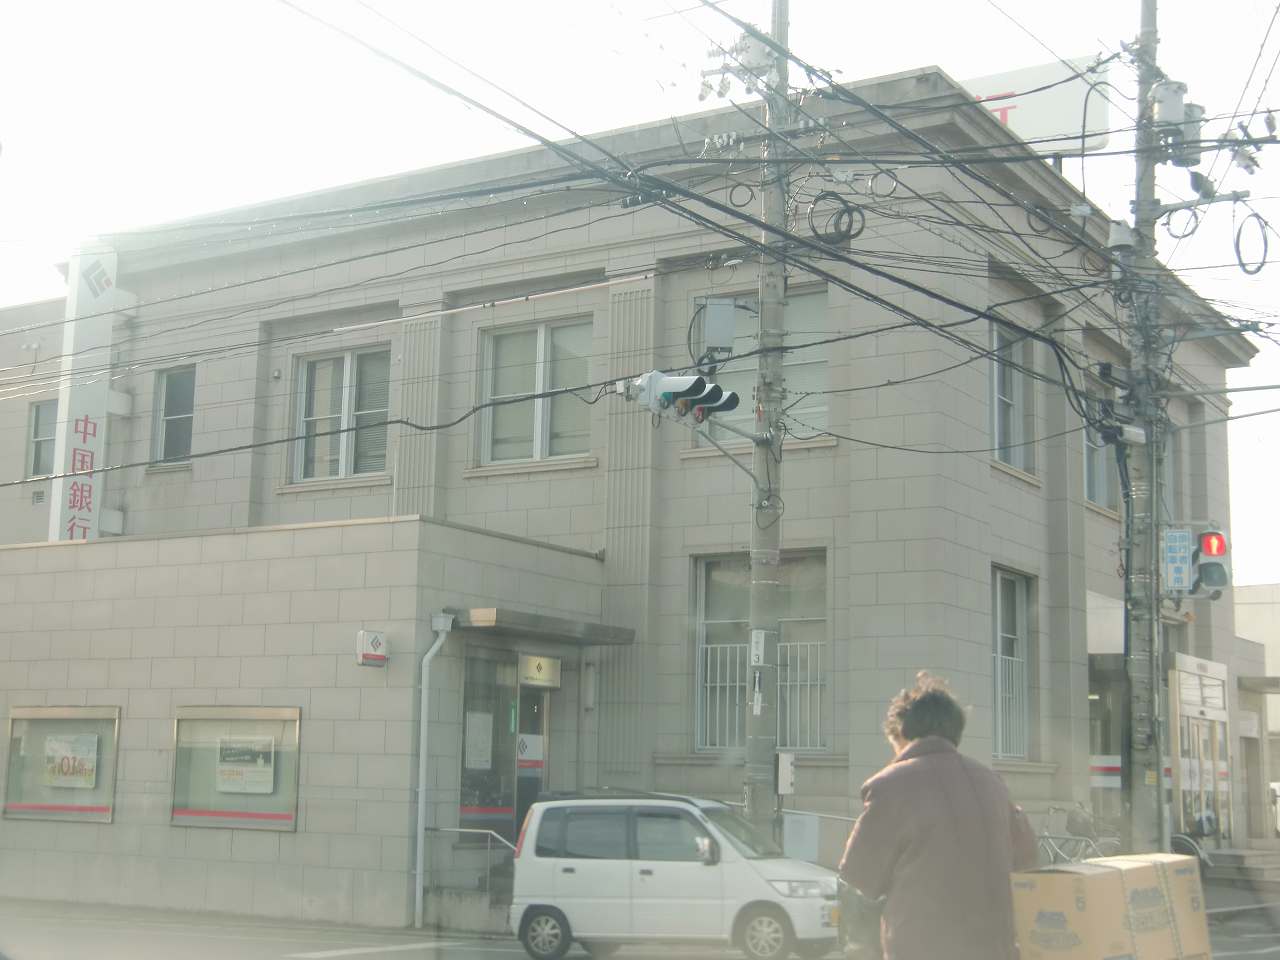 Bank. 751m to Okayama credit union Tai Fook branch (Bank)